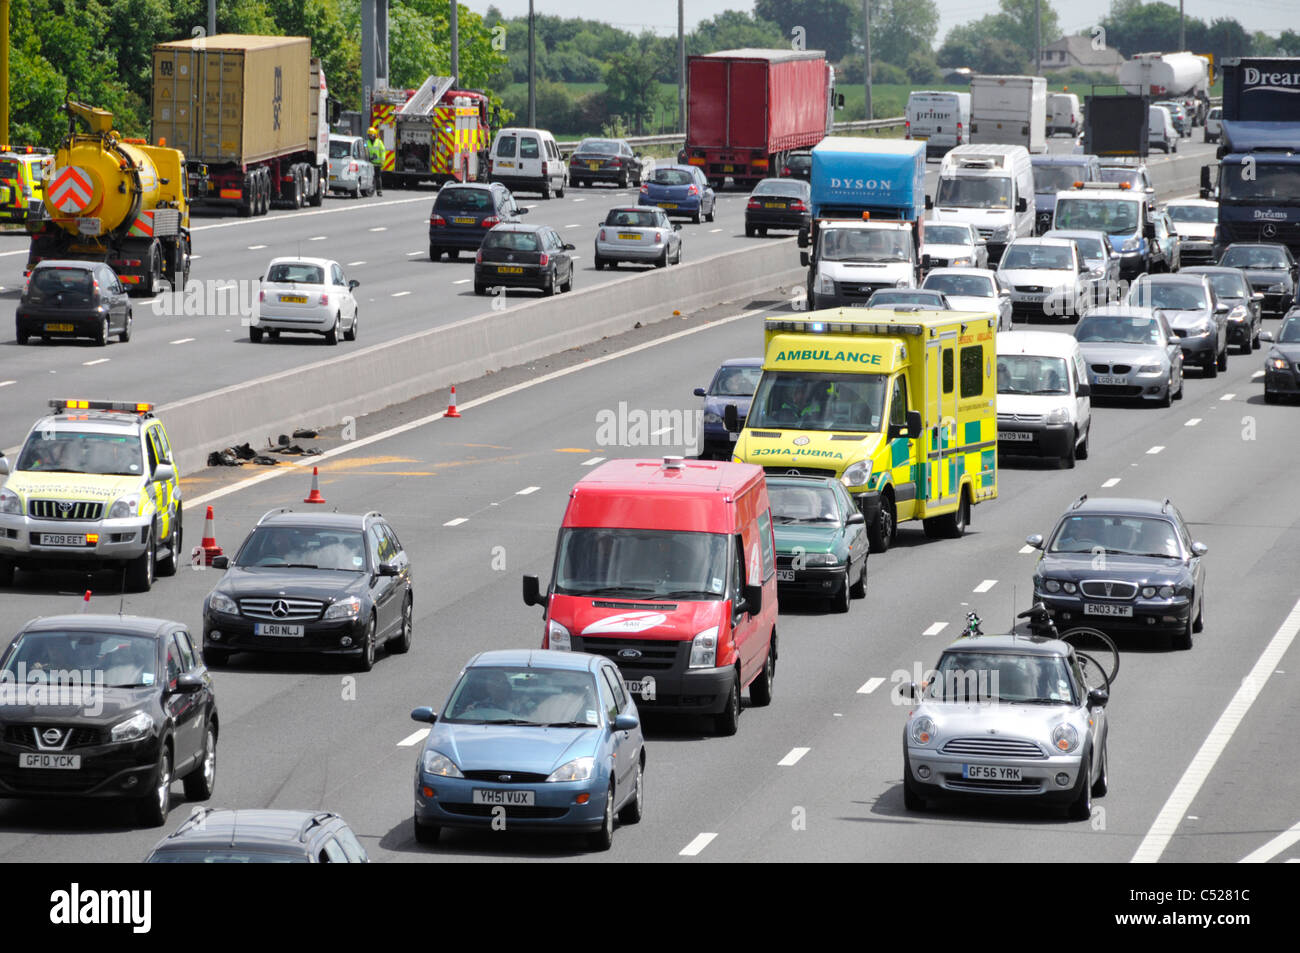 Autoroute M25 services d'urgence pour assister à deux accidents sur l'autoroute, en face de l'arrivée d'ambulance Banque D'Images